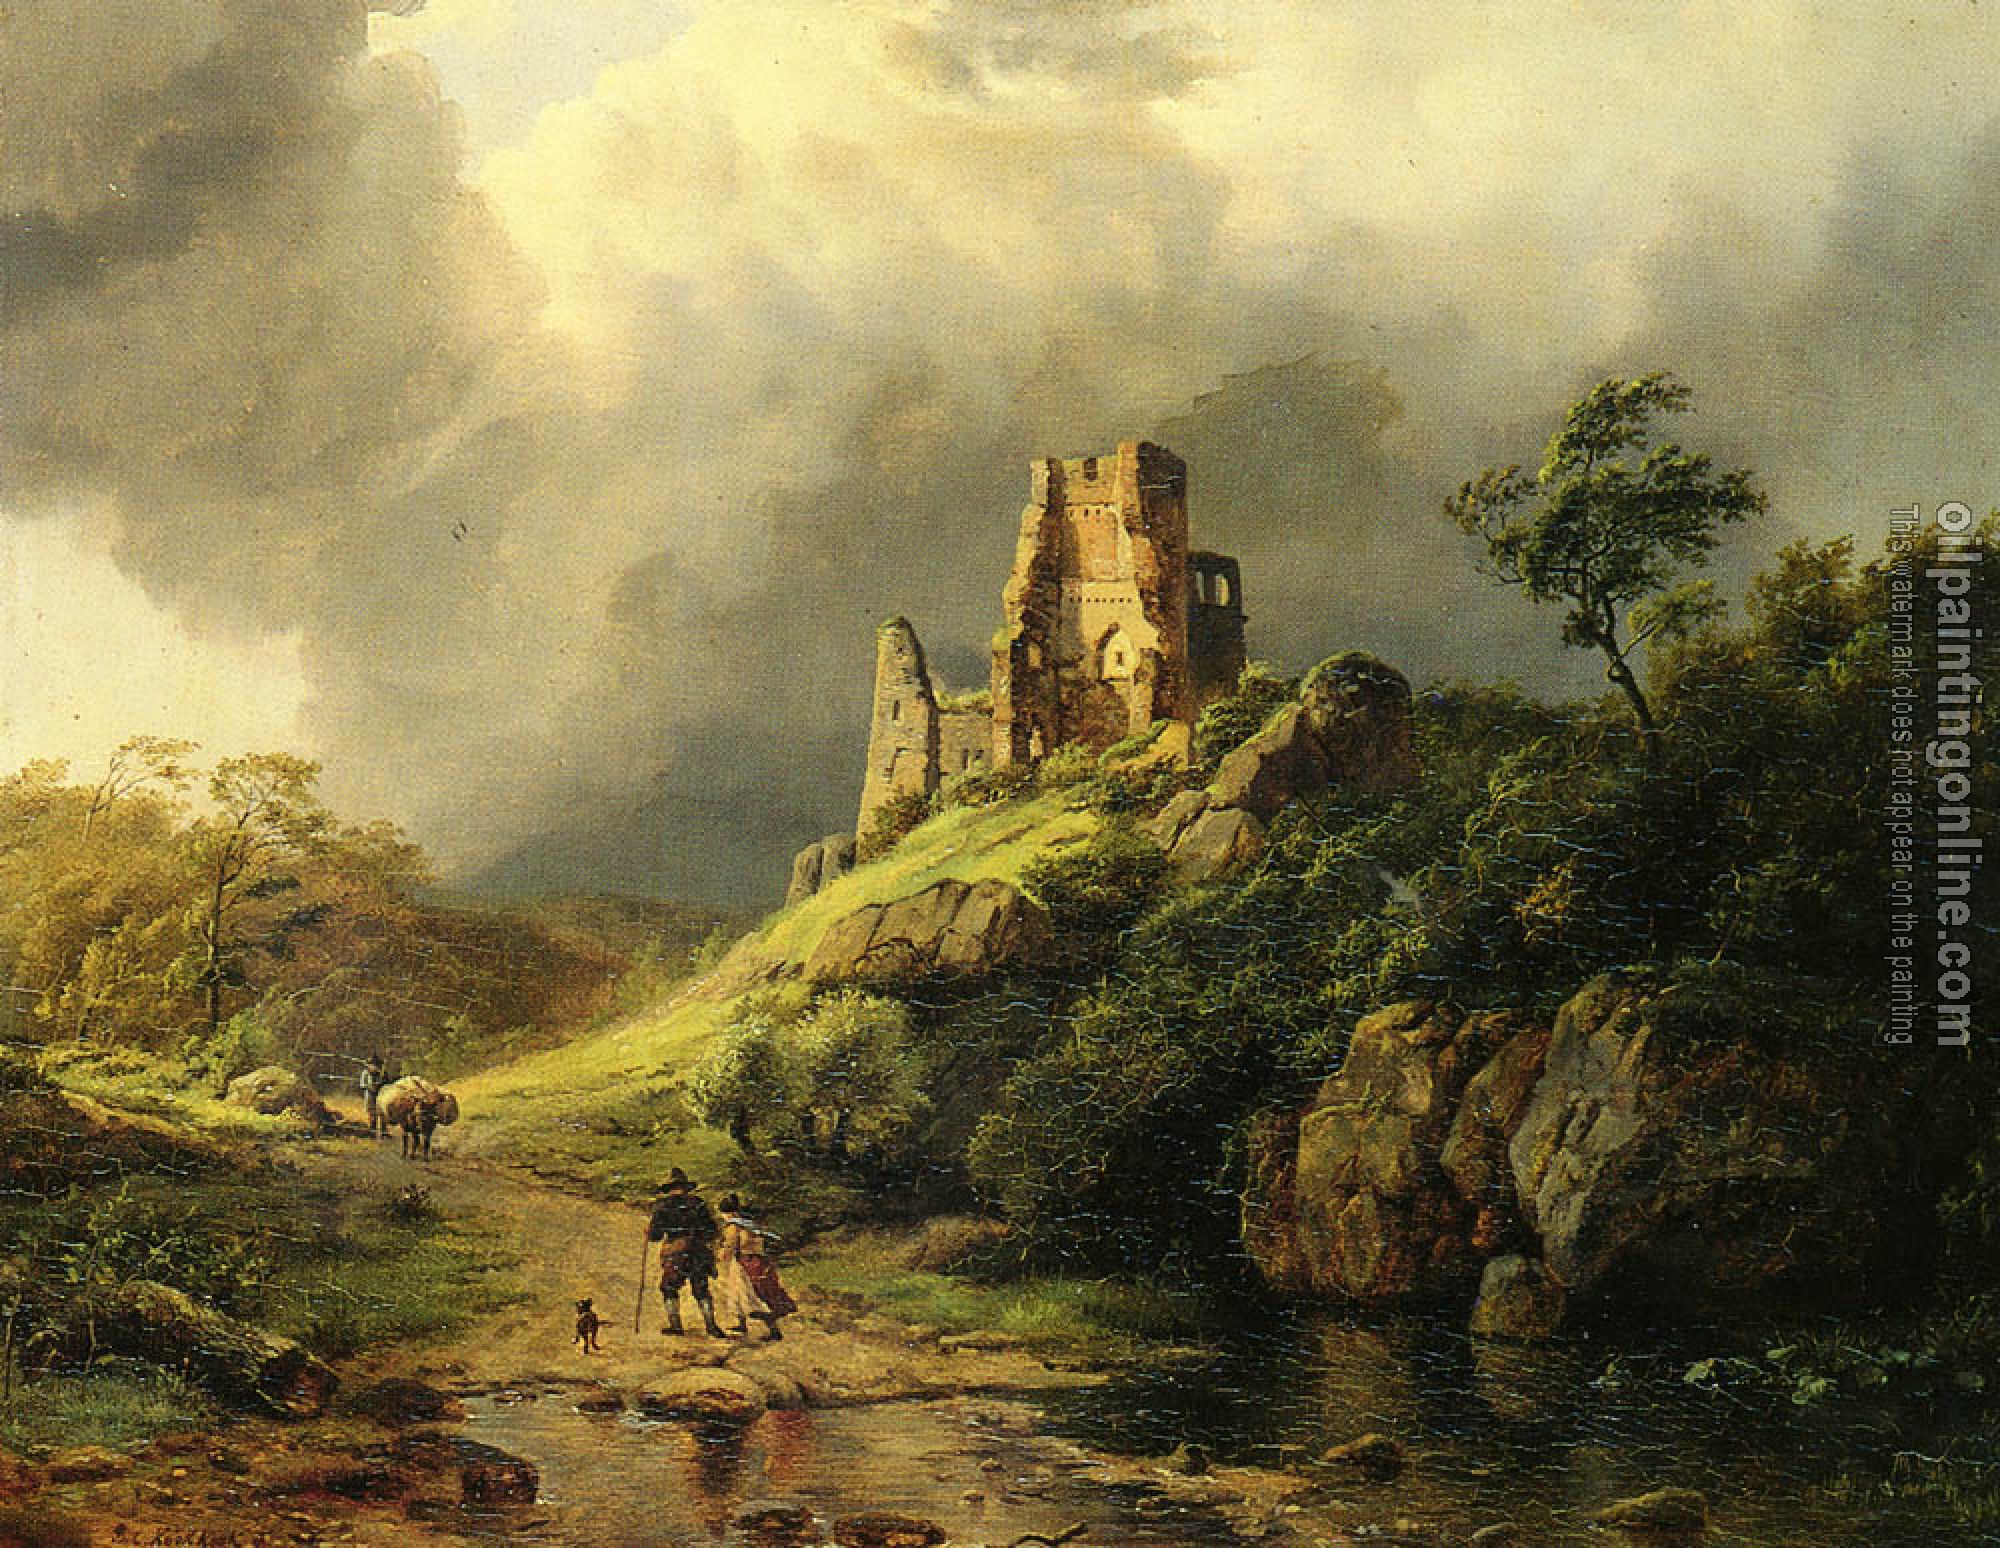 Koekkoek, Barend Cornelis - The Approaching Storm